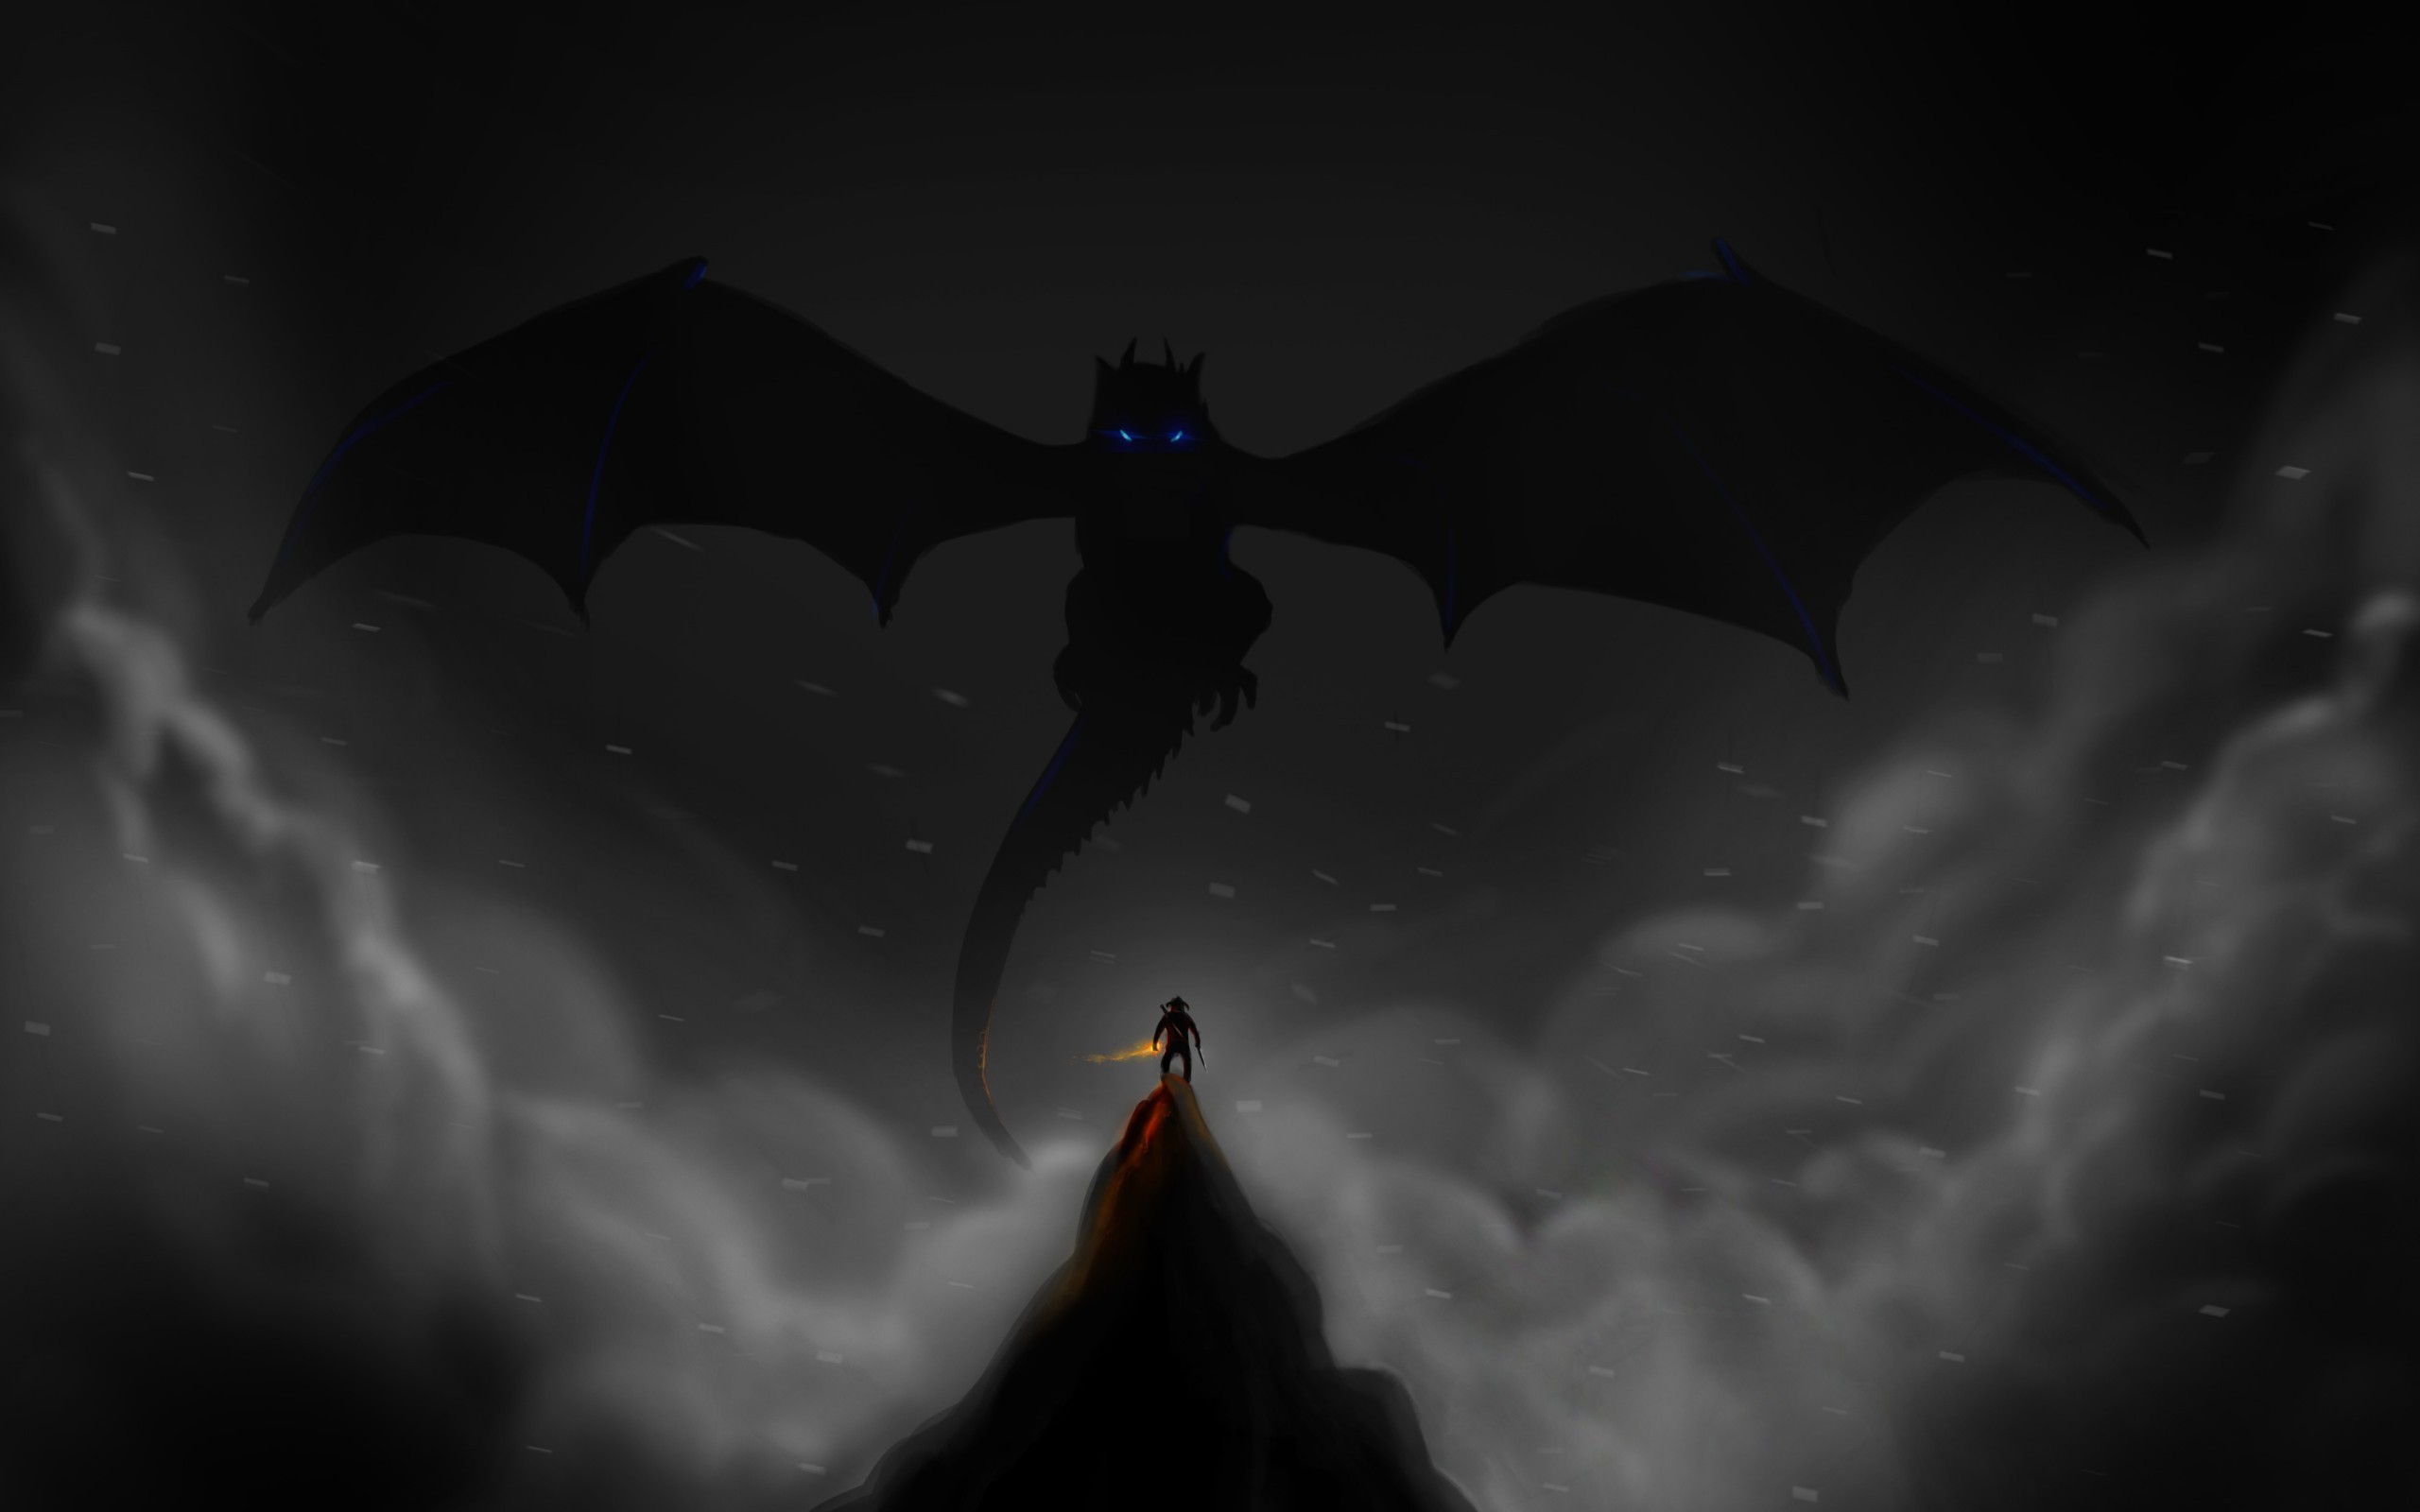 dragon, The Elder Scrolls V: Skyrim Wallpaper